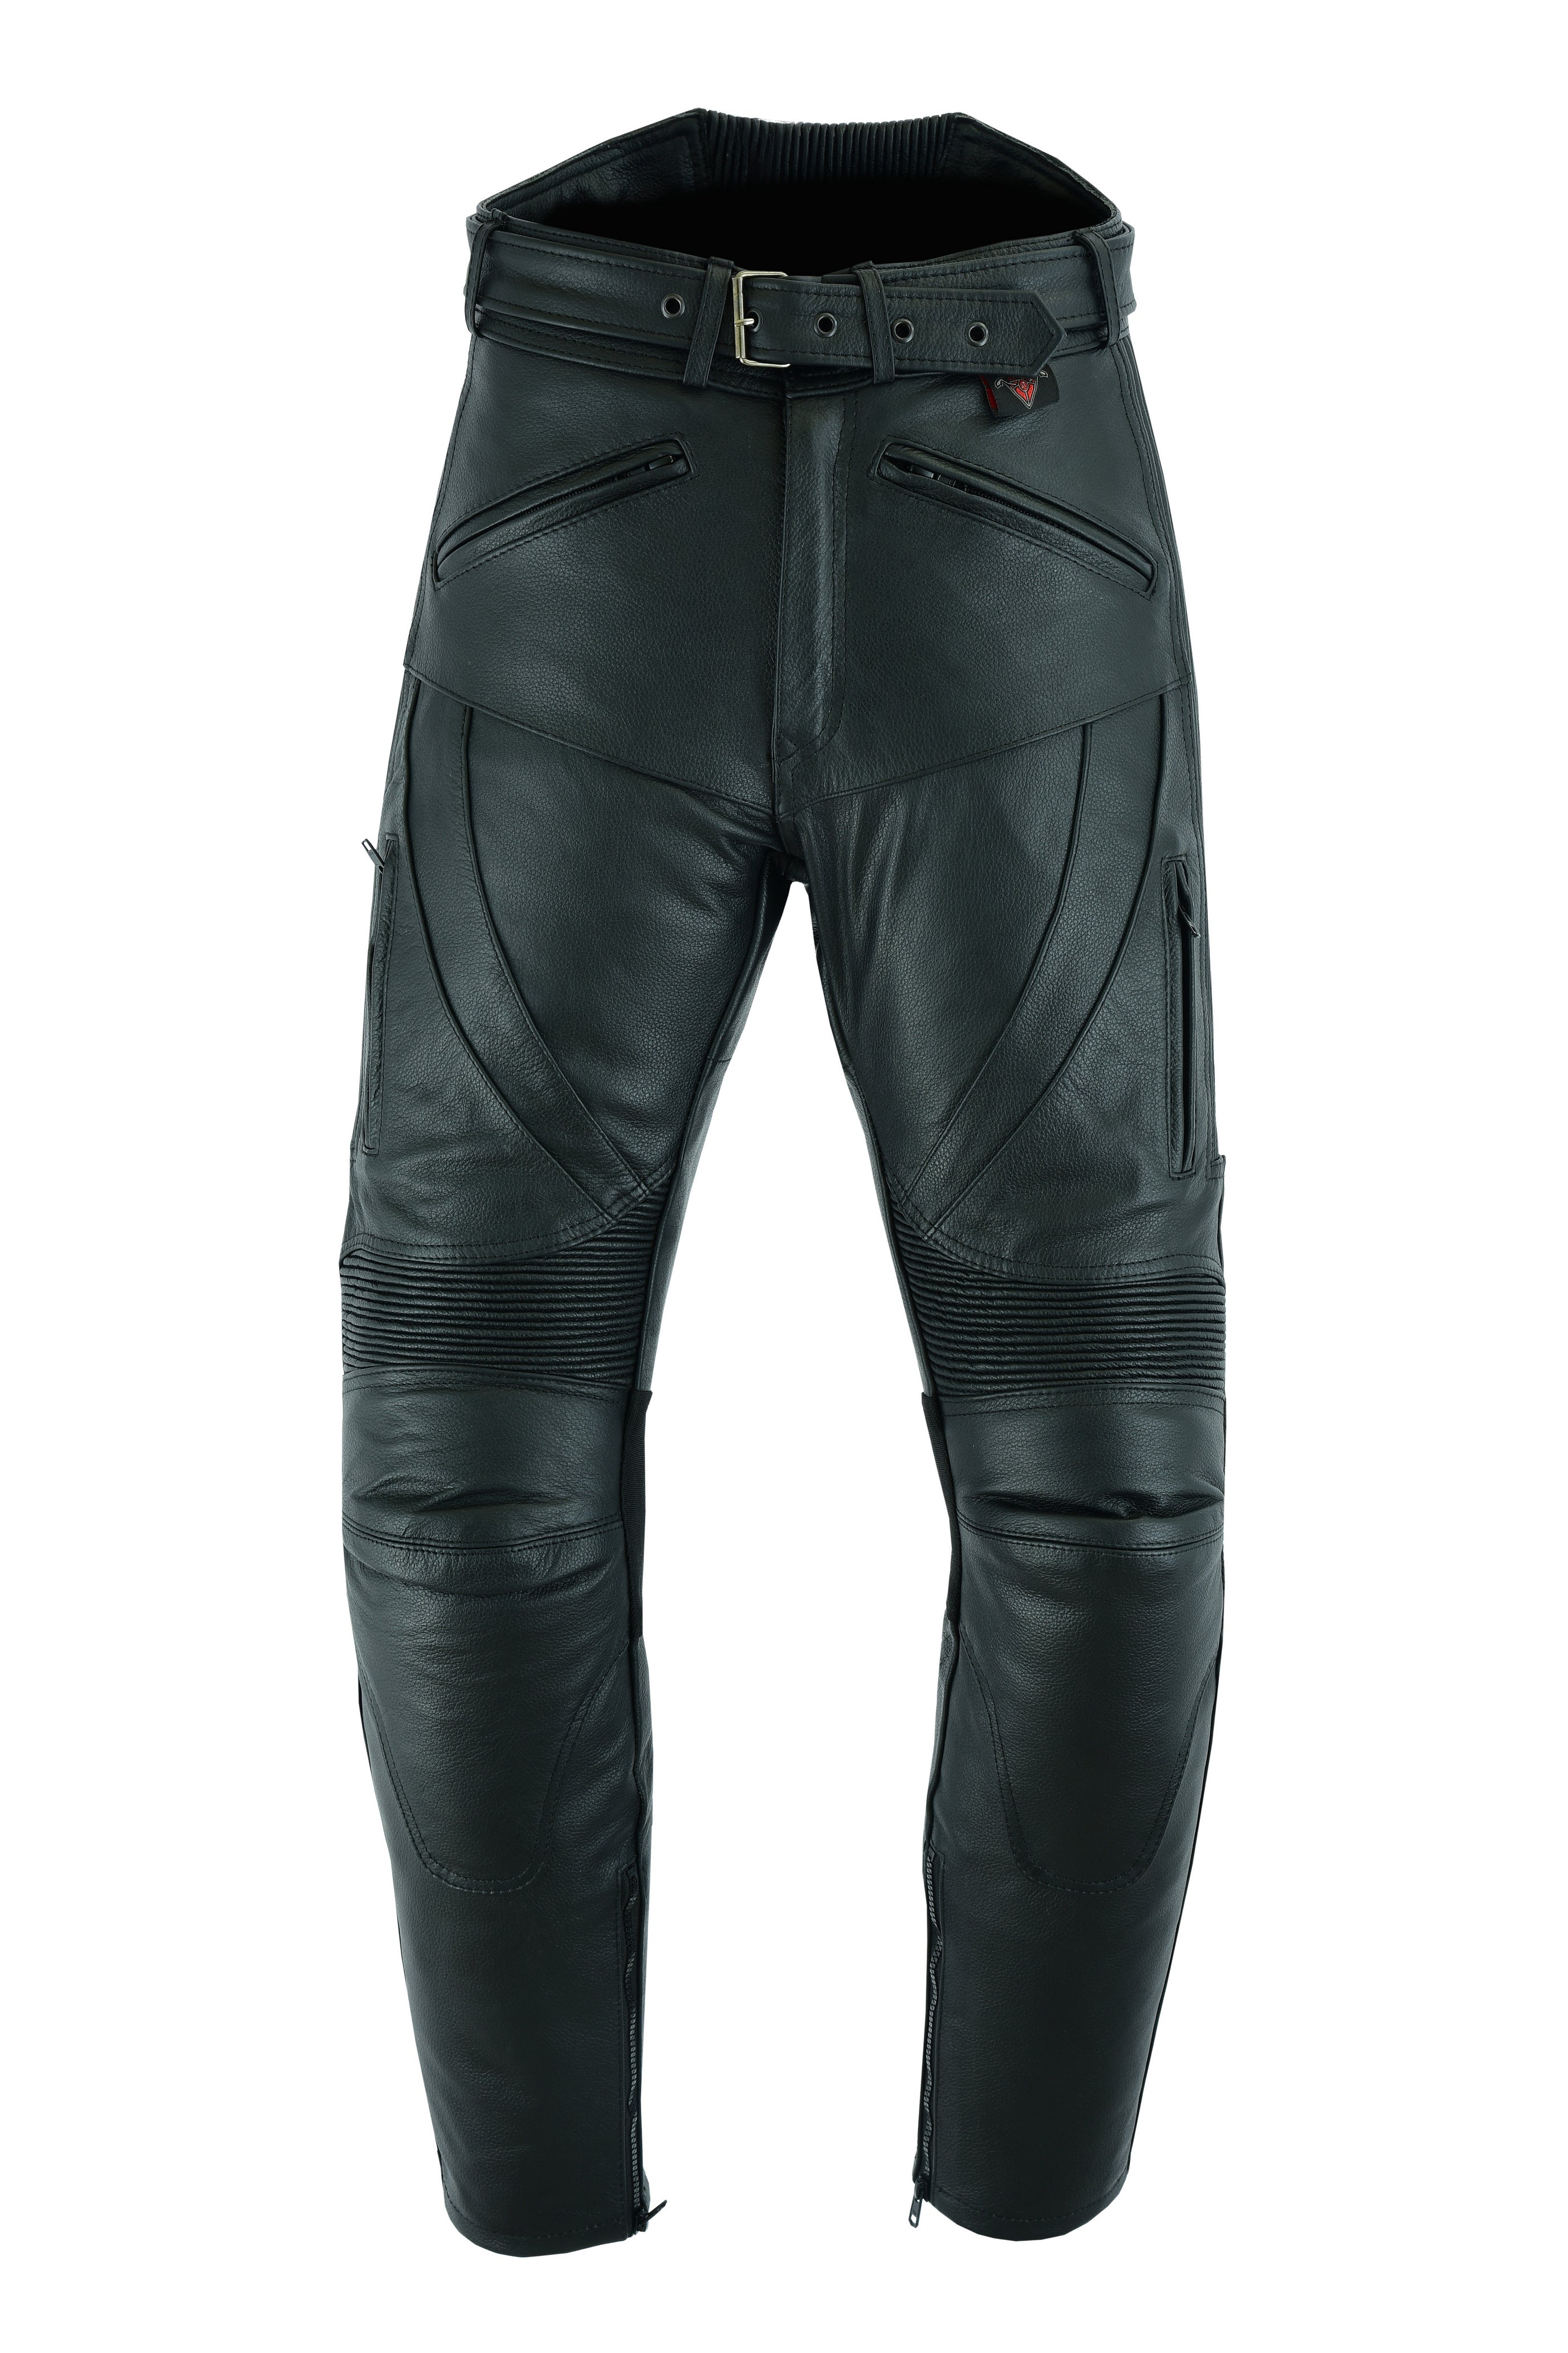 Texpeed Pantalon moto cuir homme - De tourisme en cuir pour moto Cruiser  racing avec protection authentique biker CE armor (EN 1621-1) Noir - (M